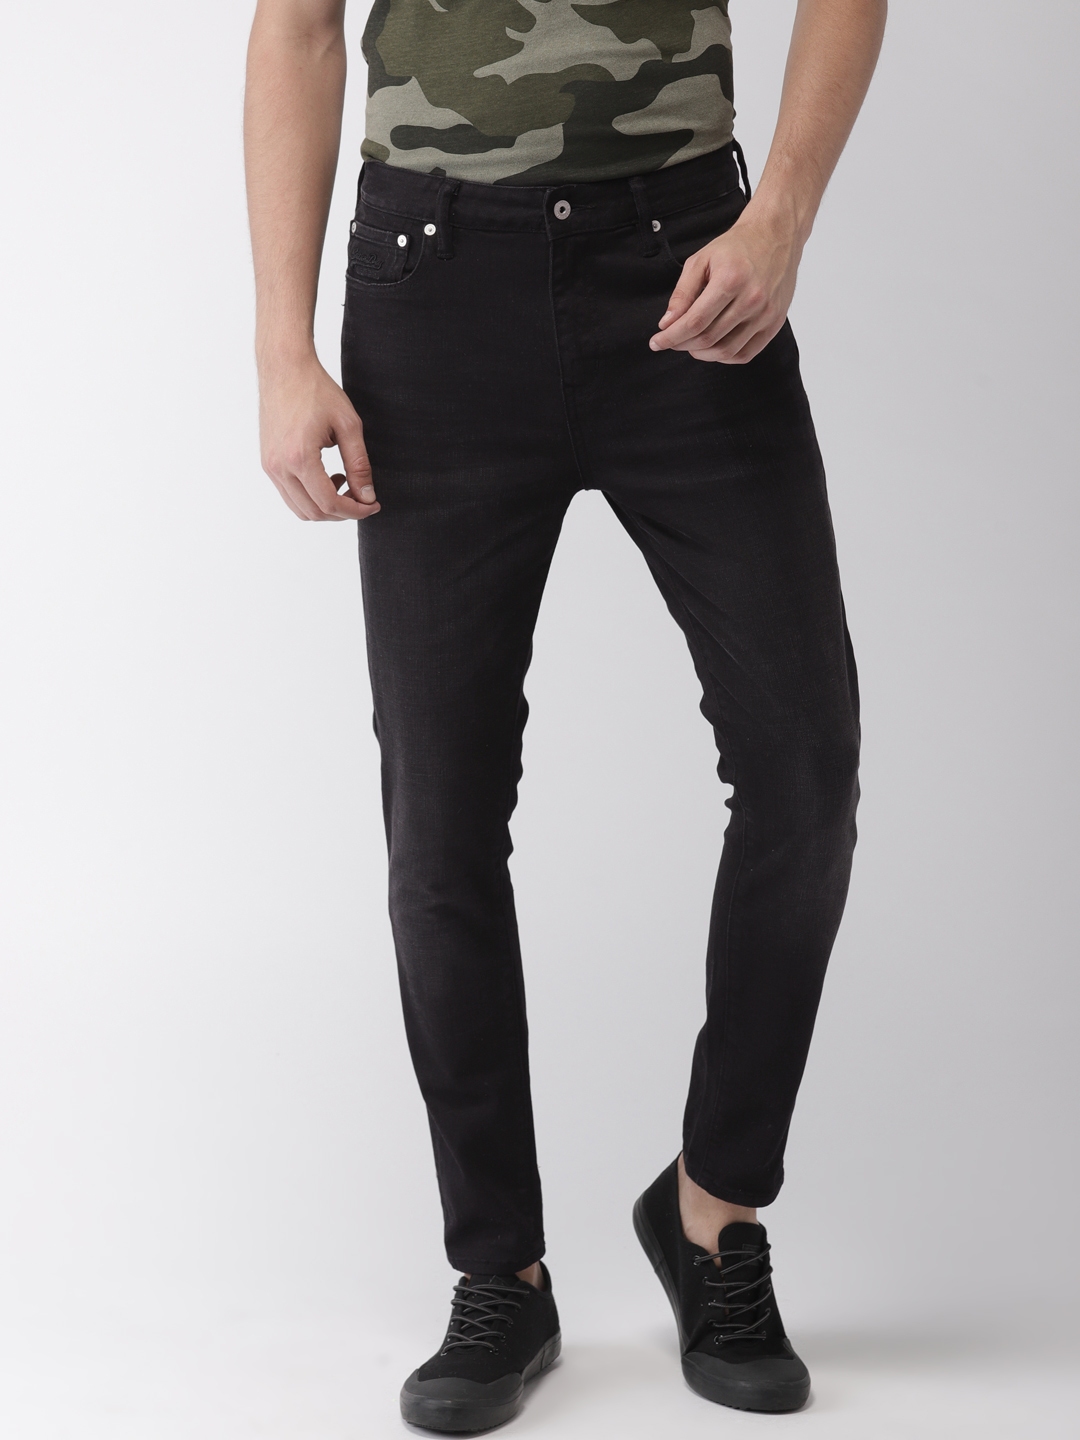 superdry black jeans